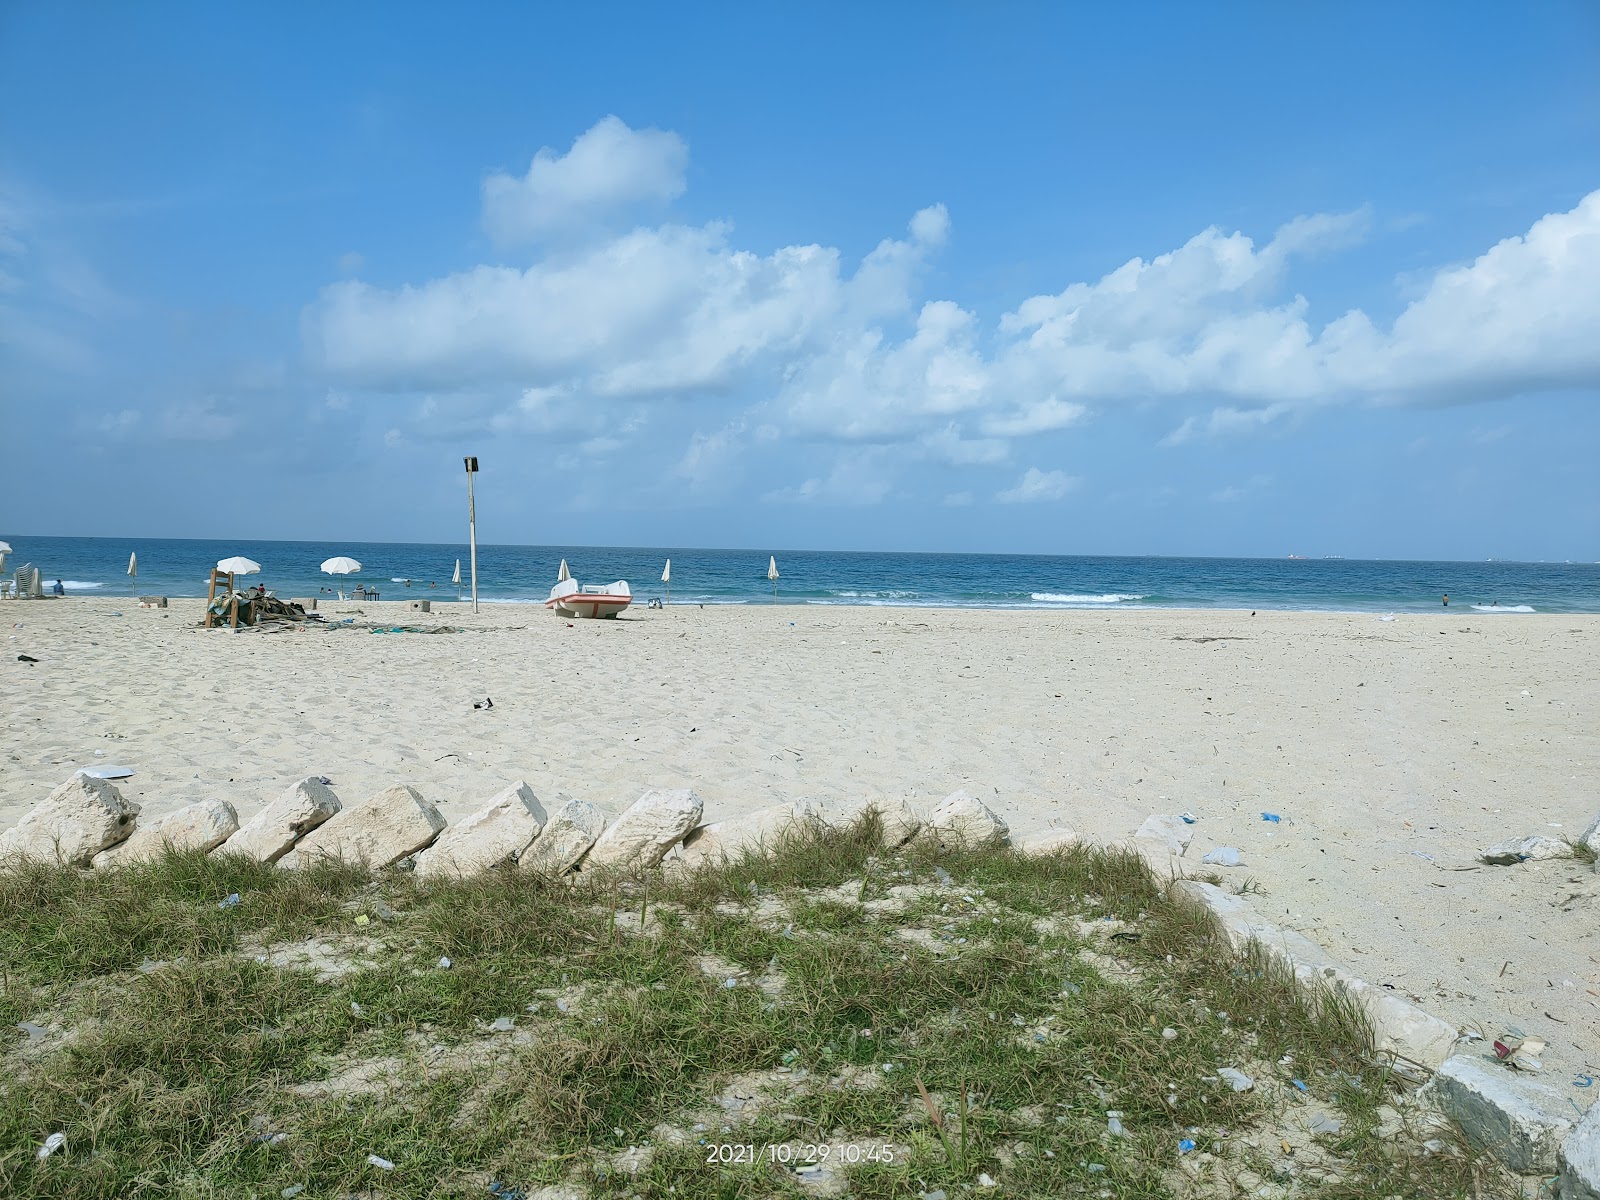 Φωτογραφία του Hanouville Public Beach με μακρά ευθεία ακτή